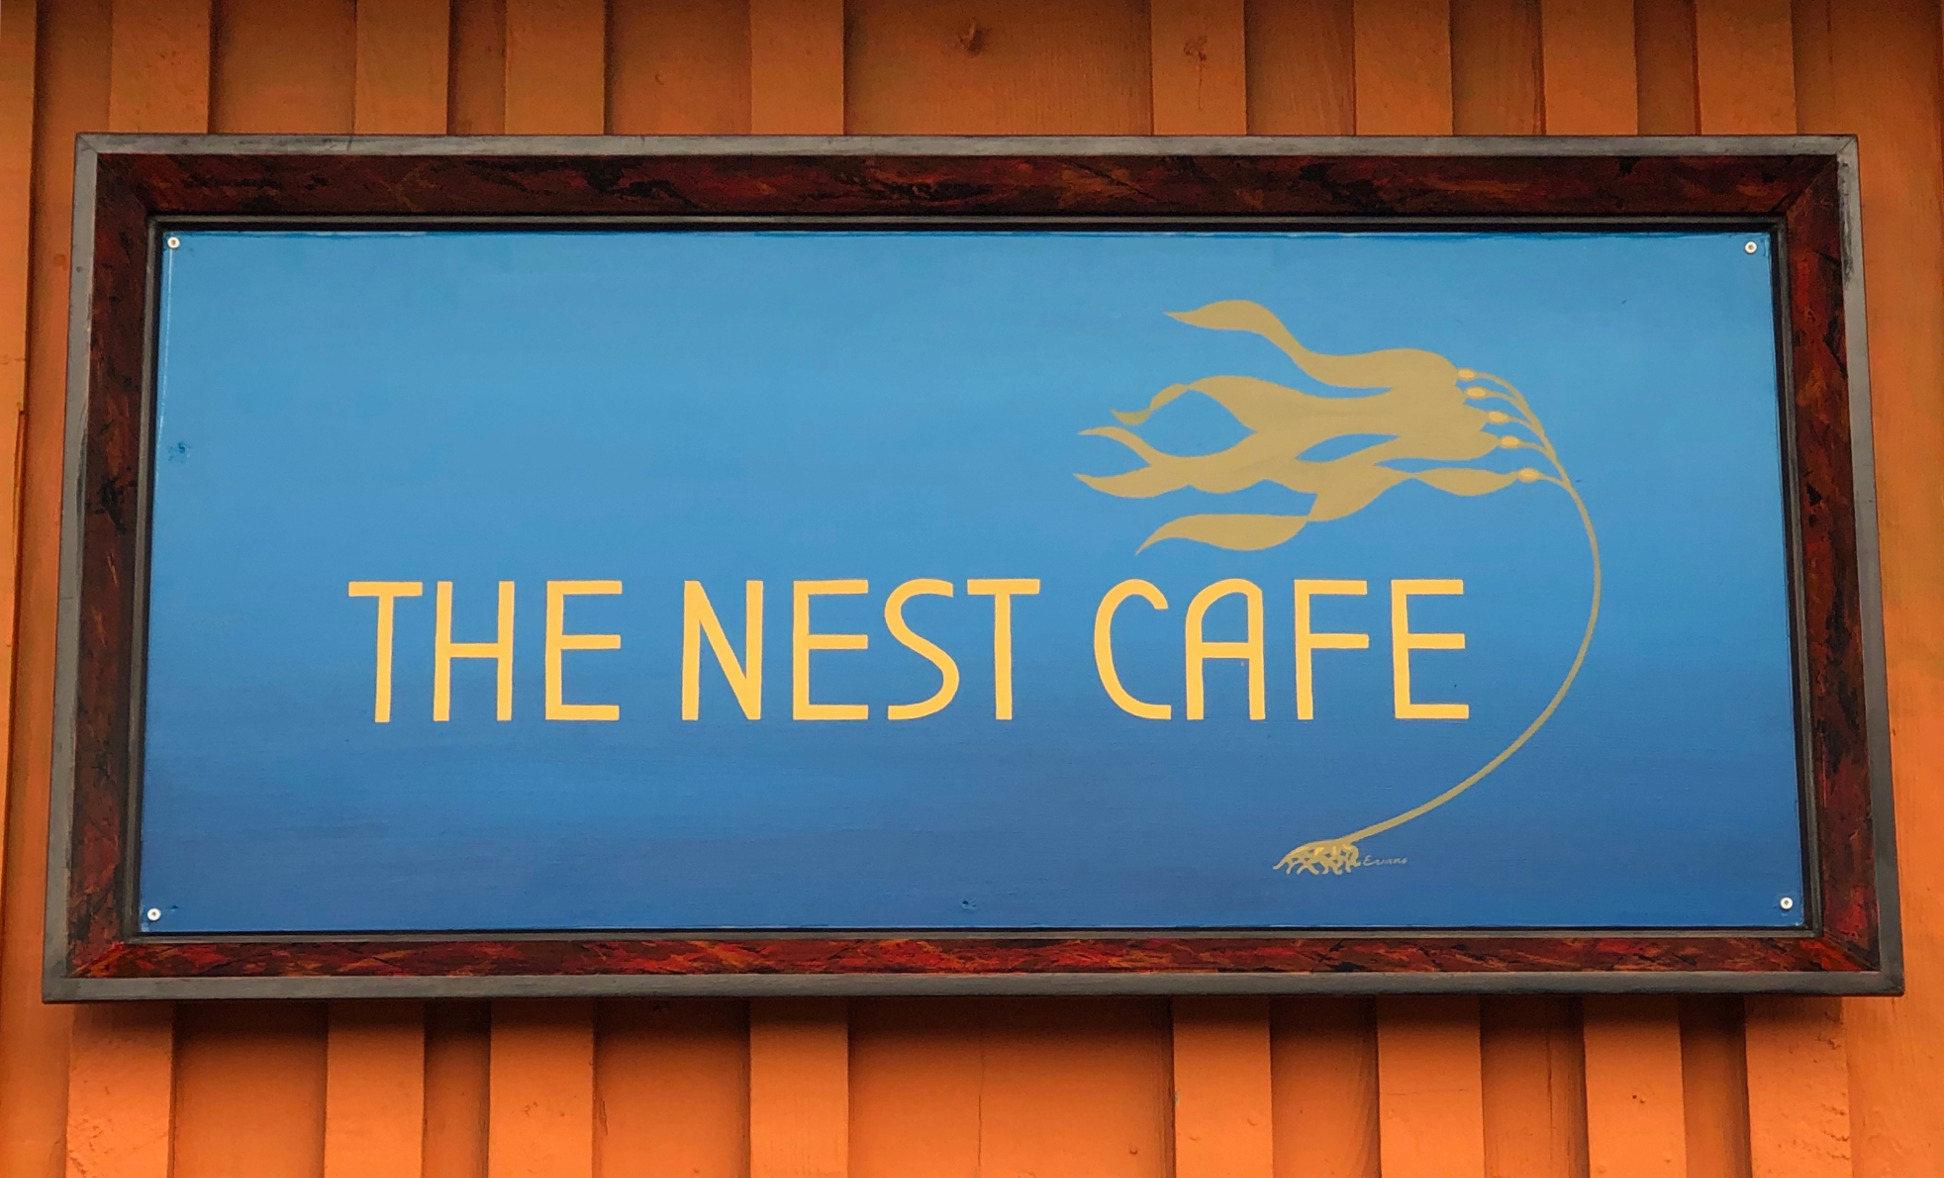 The Nest Cafe Signage